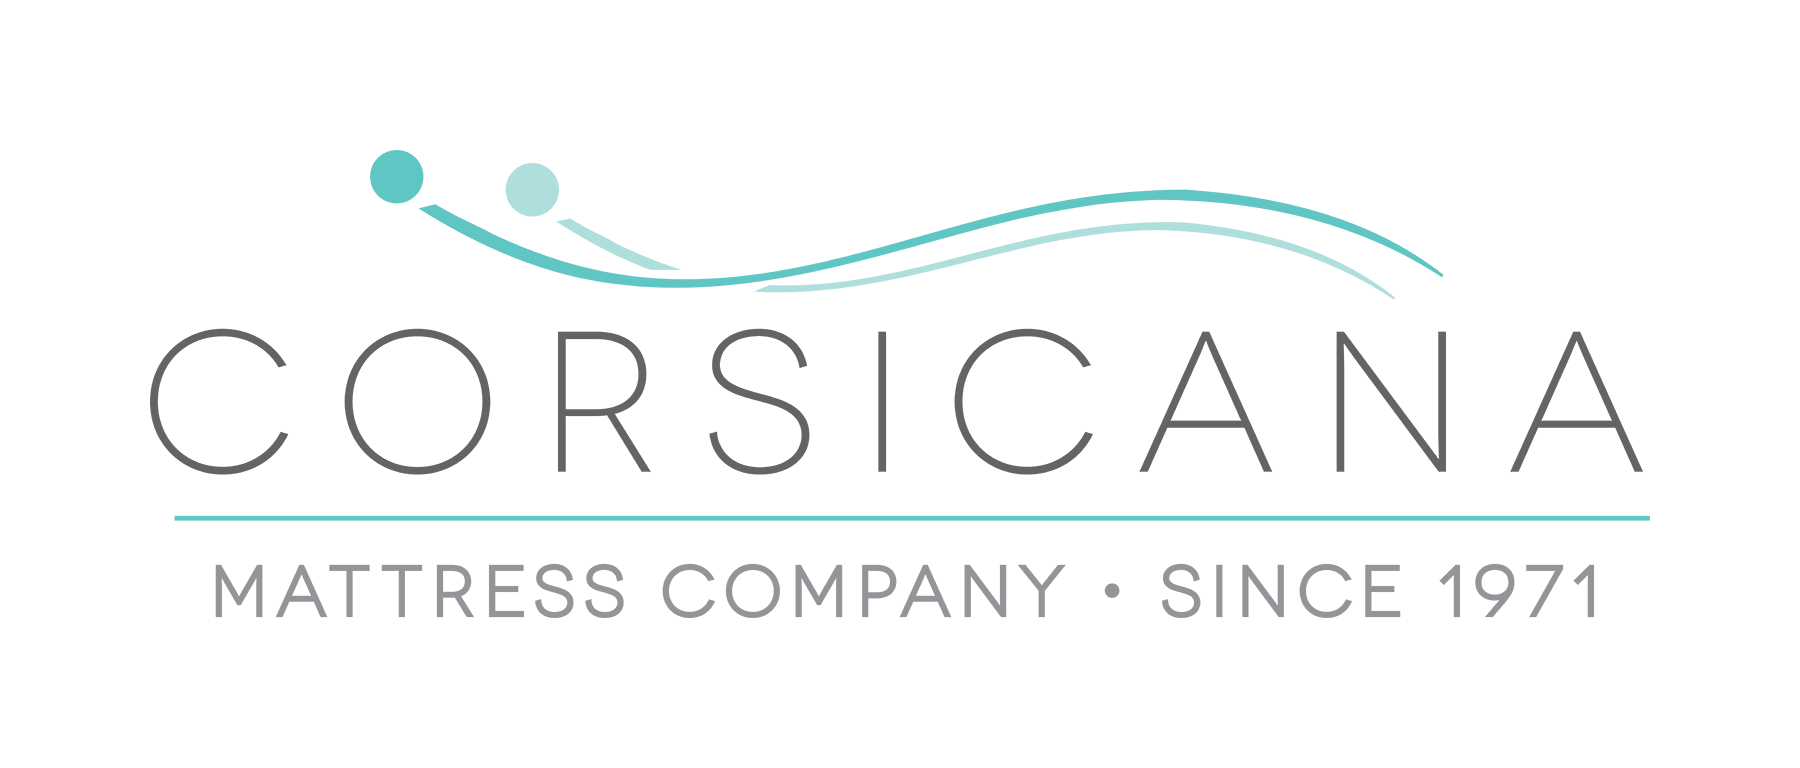 Mattress Logo - Corsicana Bedding | Better Business Bureau® Profile